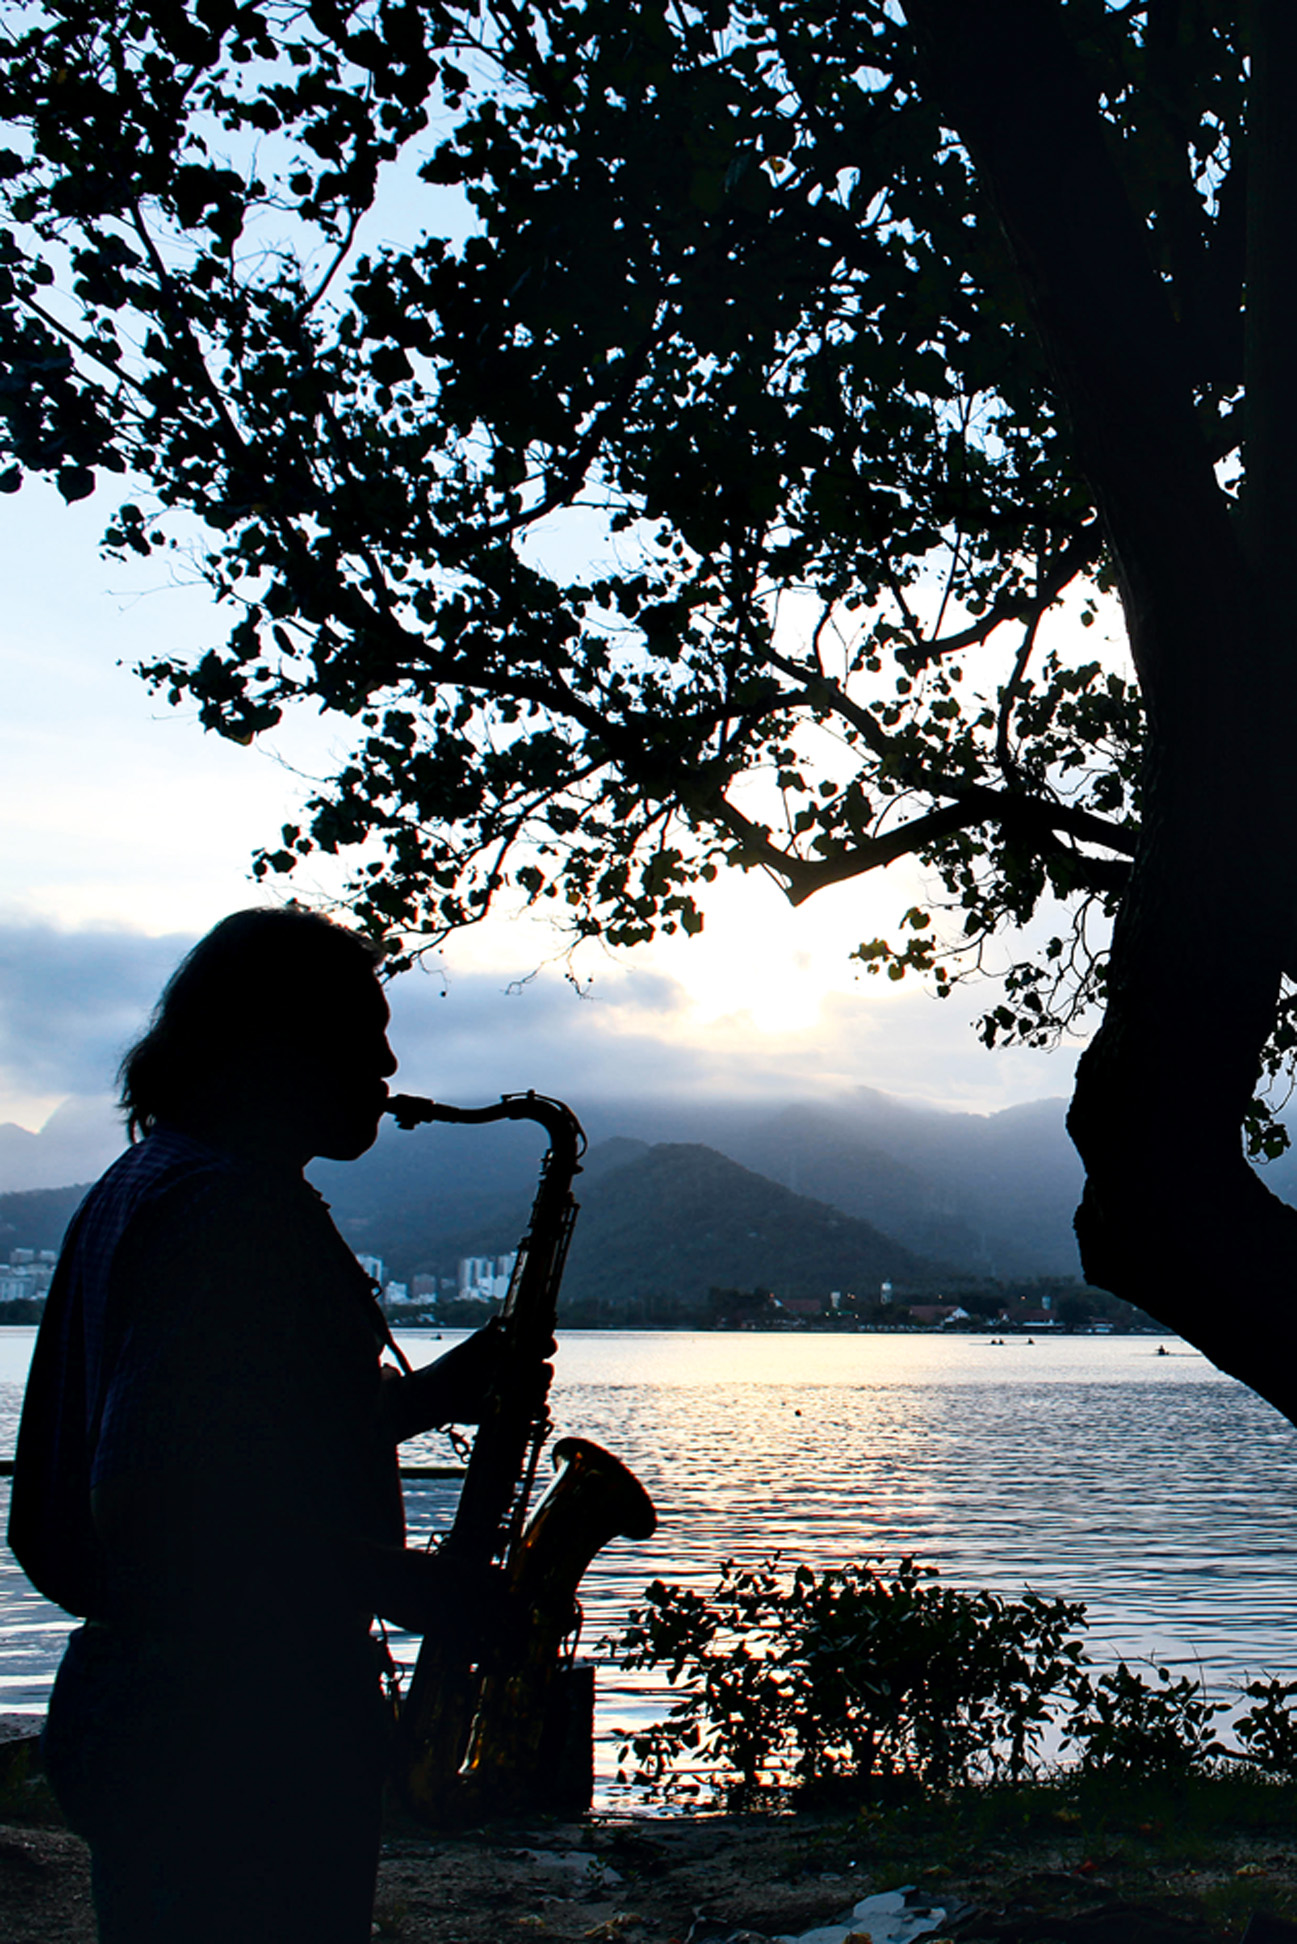 18:00 - “Fui tomar um coco na Lagoa e vi um saxofonista tocando. Coisas do Rio...”